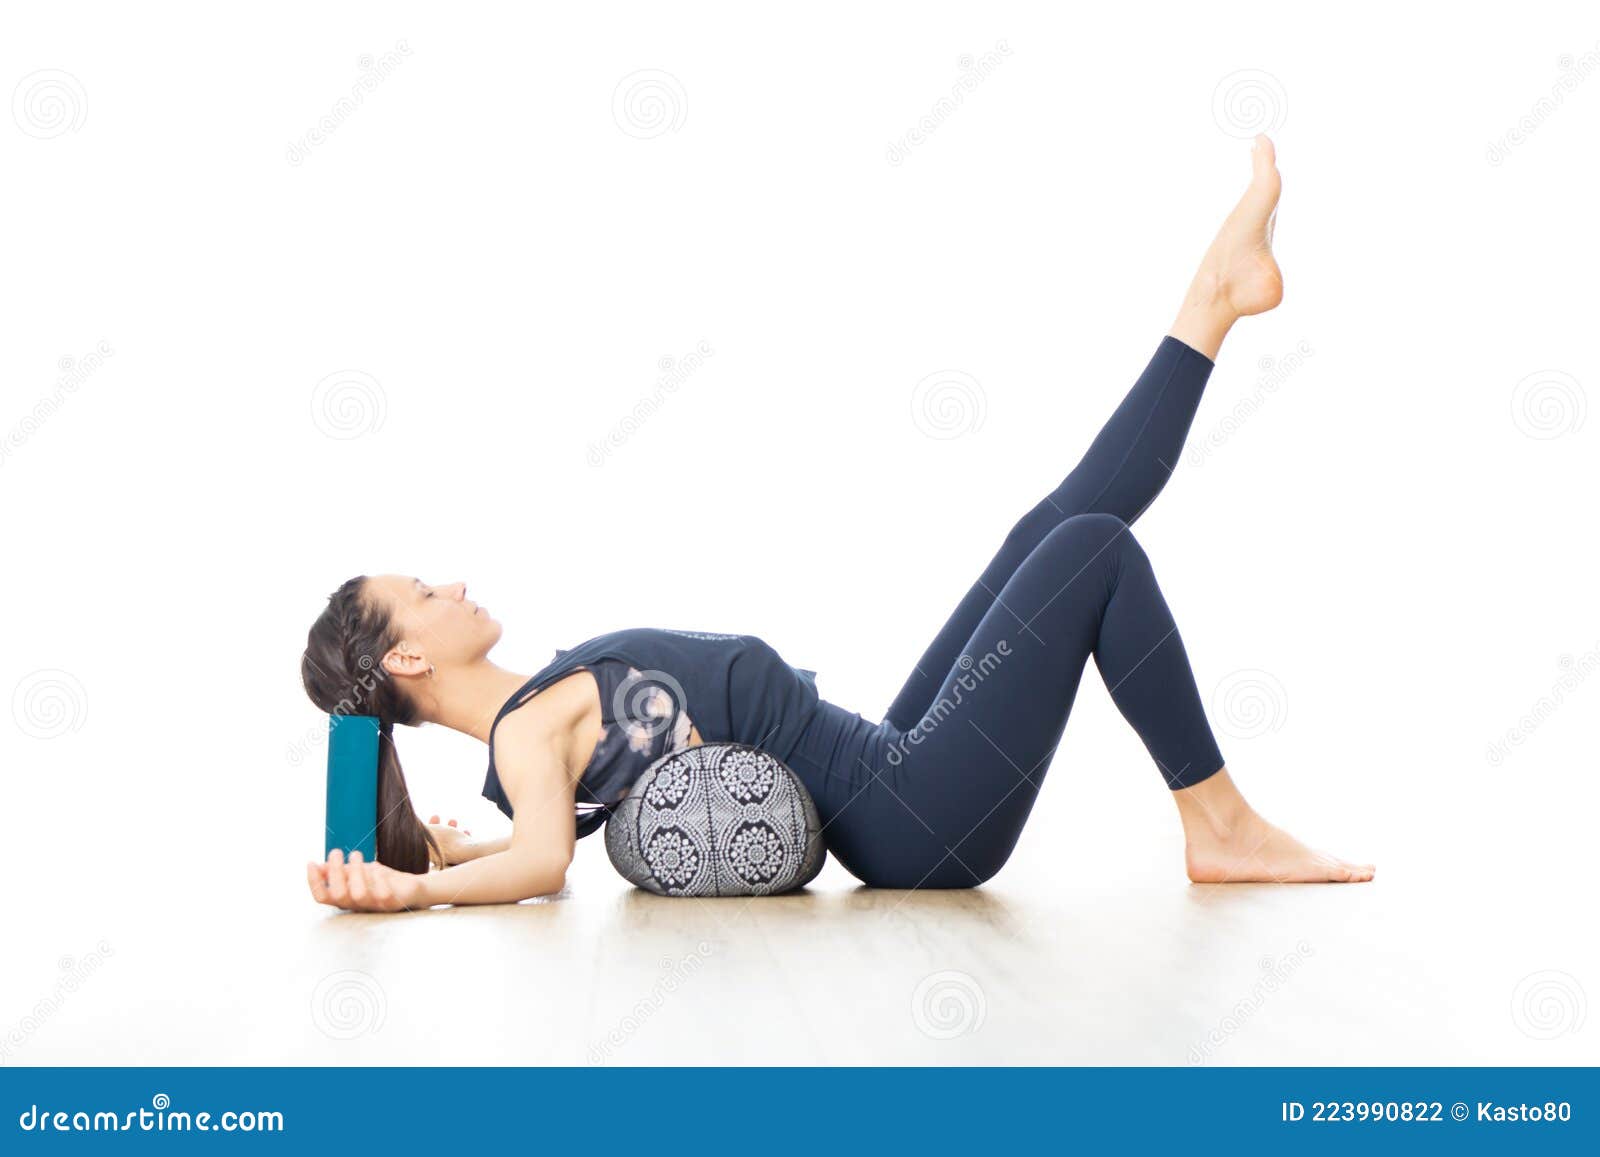 Yoga Bolster Set - Rectangular Yoga Bolster Pillow for Restorative Yoga,  Soft Me | eBay